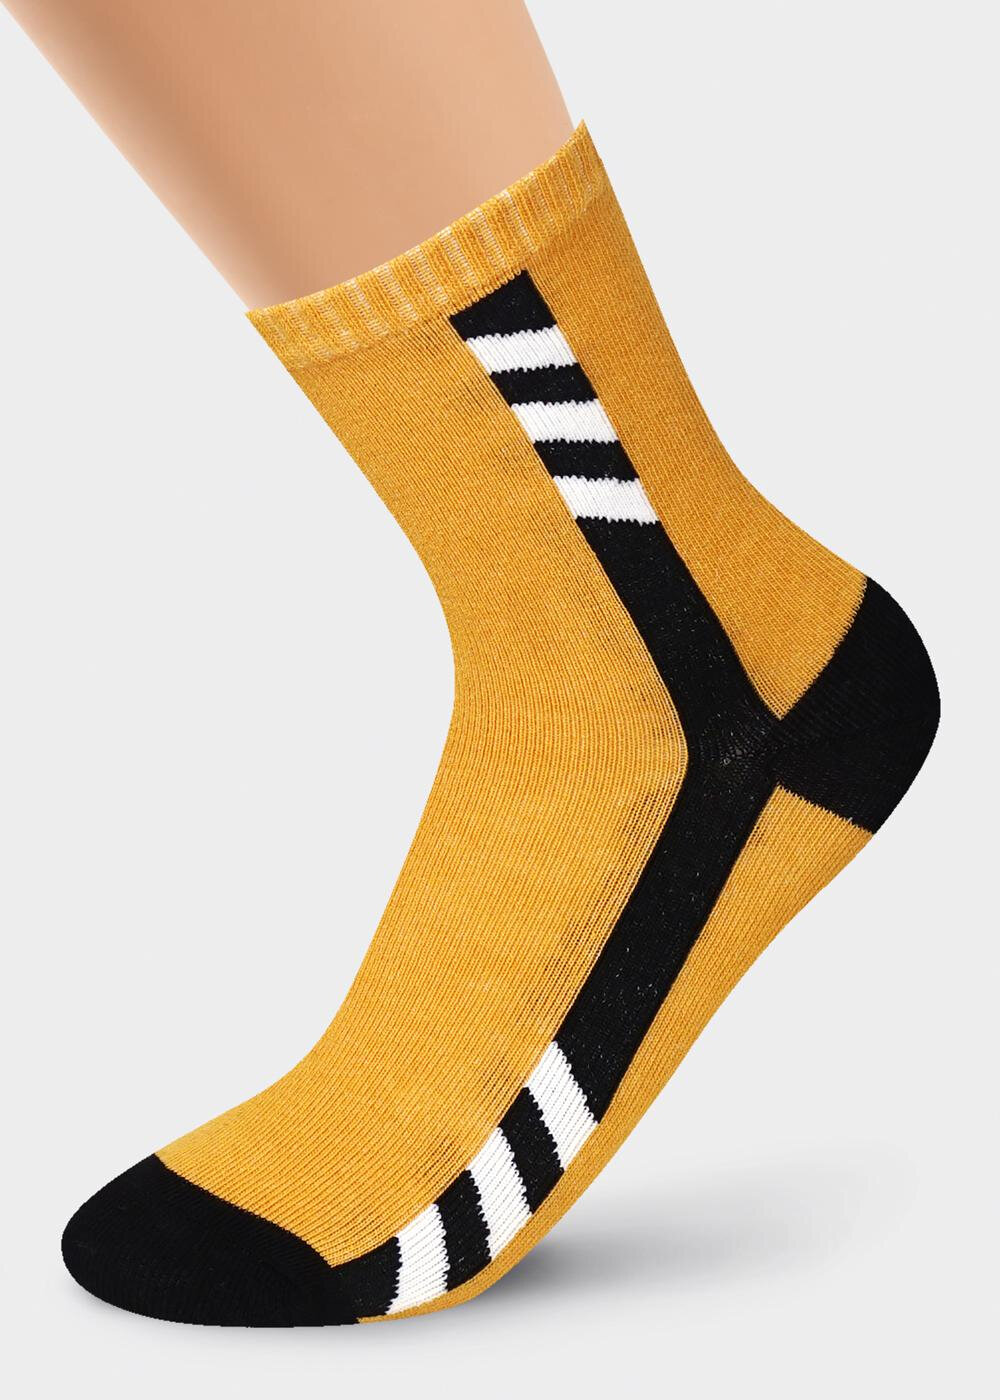 Жёлтые носки для мальчиков. Cle с1340 носки дет. Смайл ХЛ+Эл (чёрный/белый) (22). Клевер носки к 23 февраля. Носки 20-22 какой размер. Горчичные носки